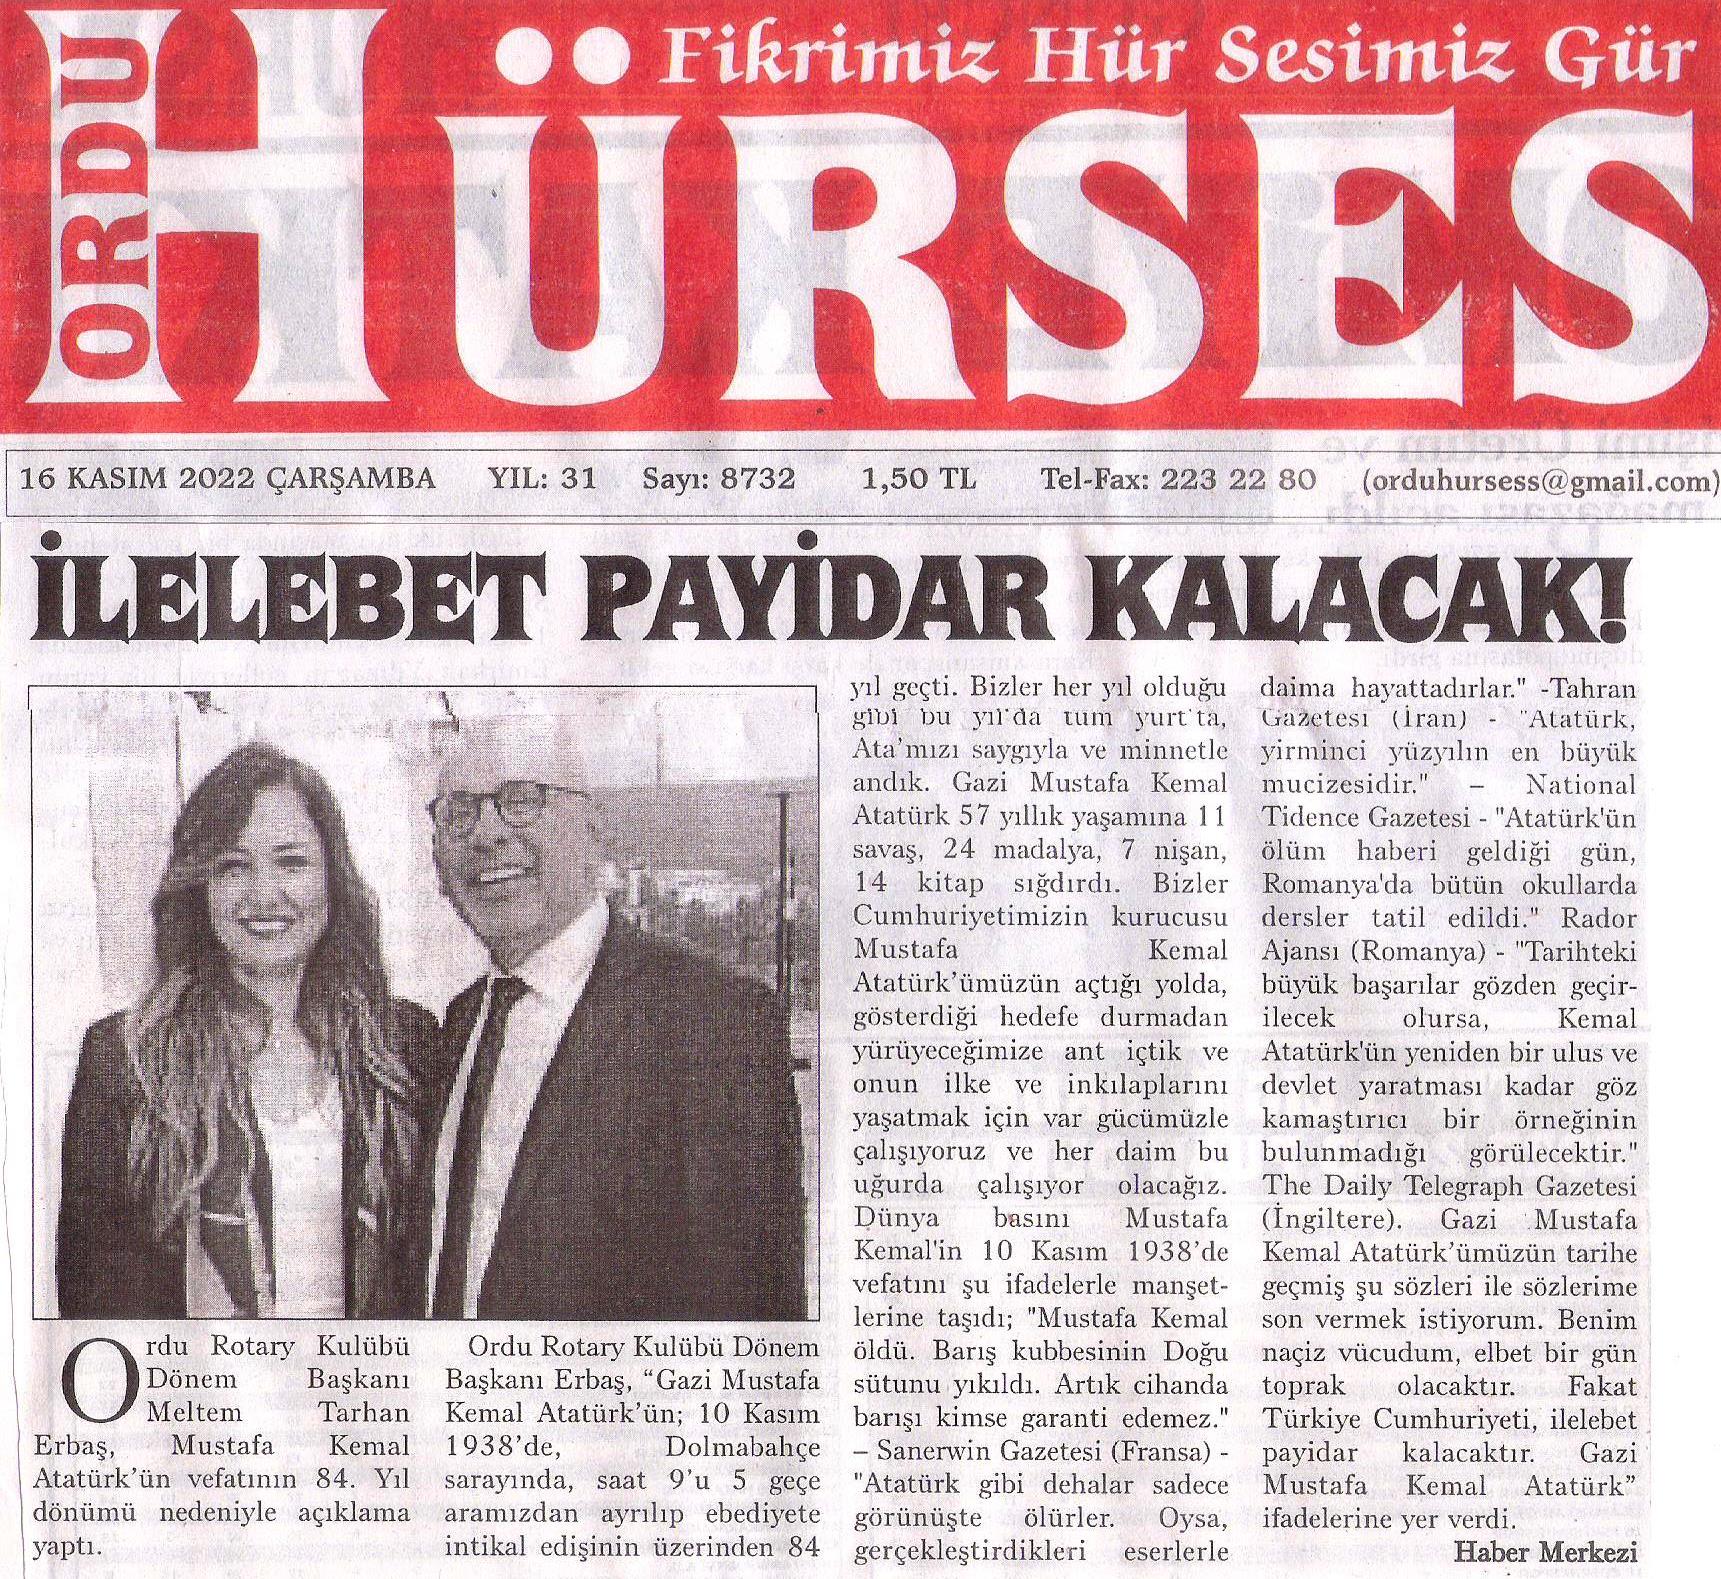 Ordu Rotary Kulübünün “Arkadaşının Getir Toplantısı ve Başkan Rtn. Meltem Erbaş’ın 10 Kasım Mesajı” basında yer aldı.